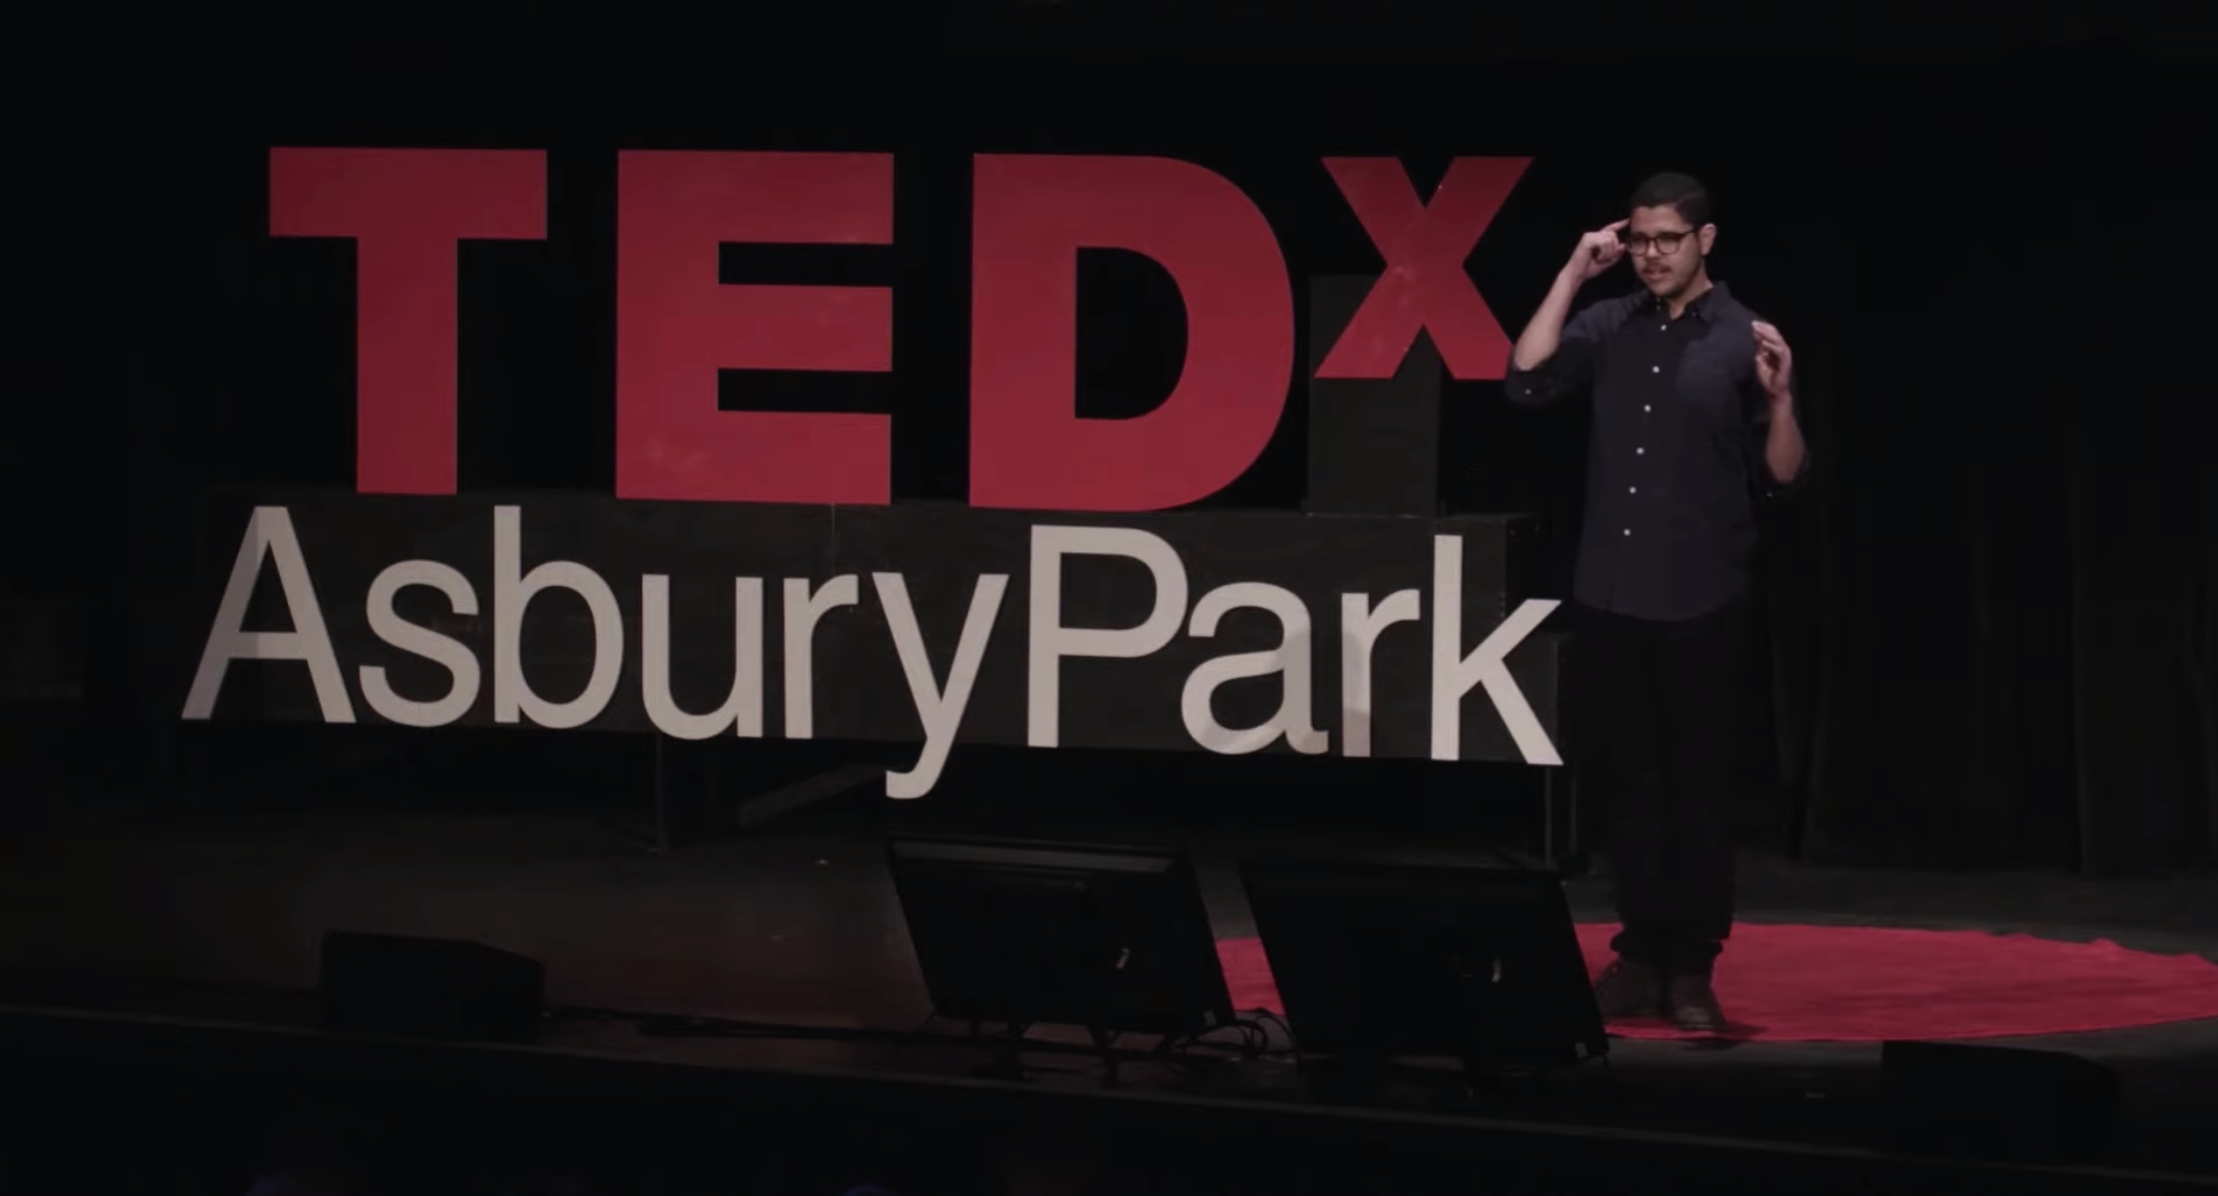 Alex Castillo - TEDx speaker